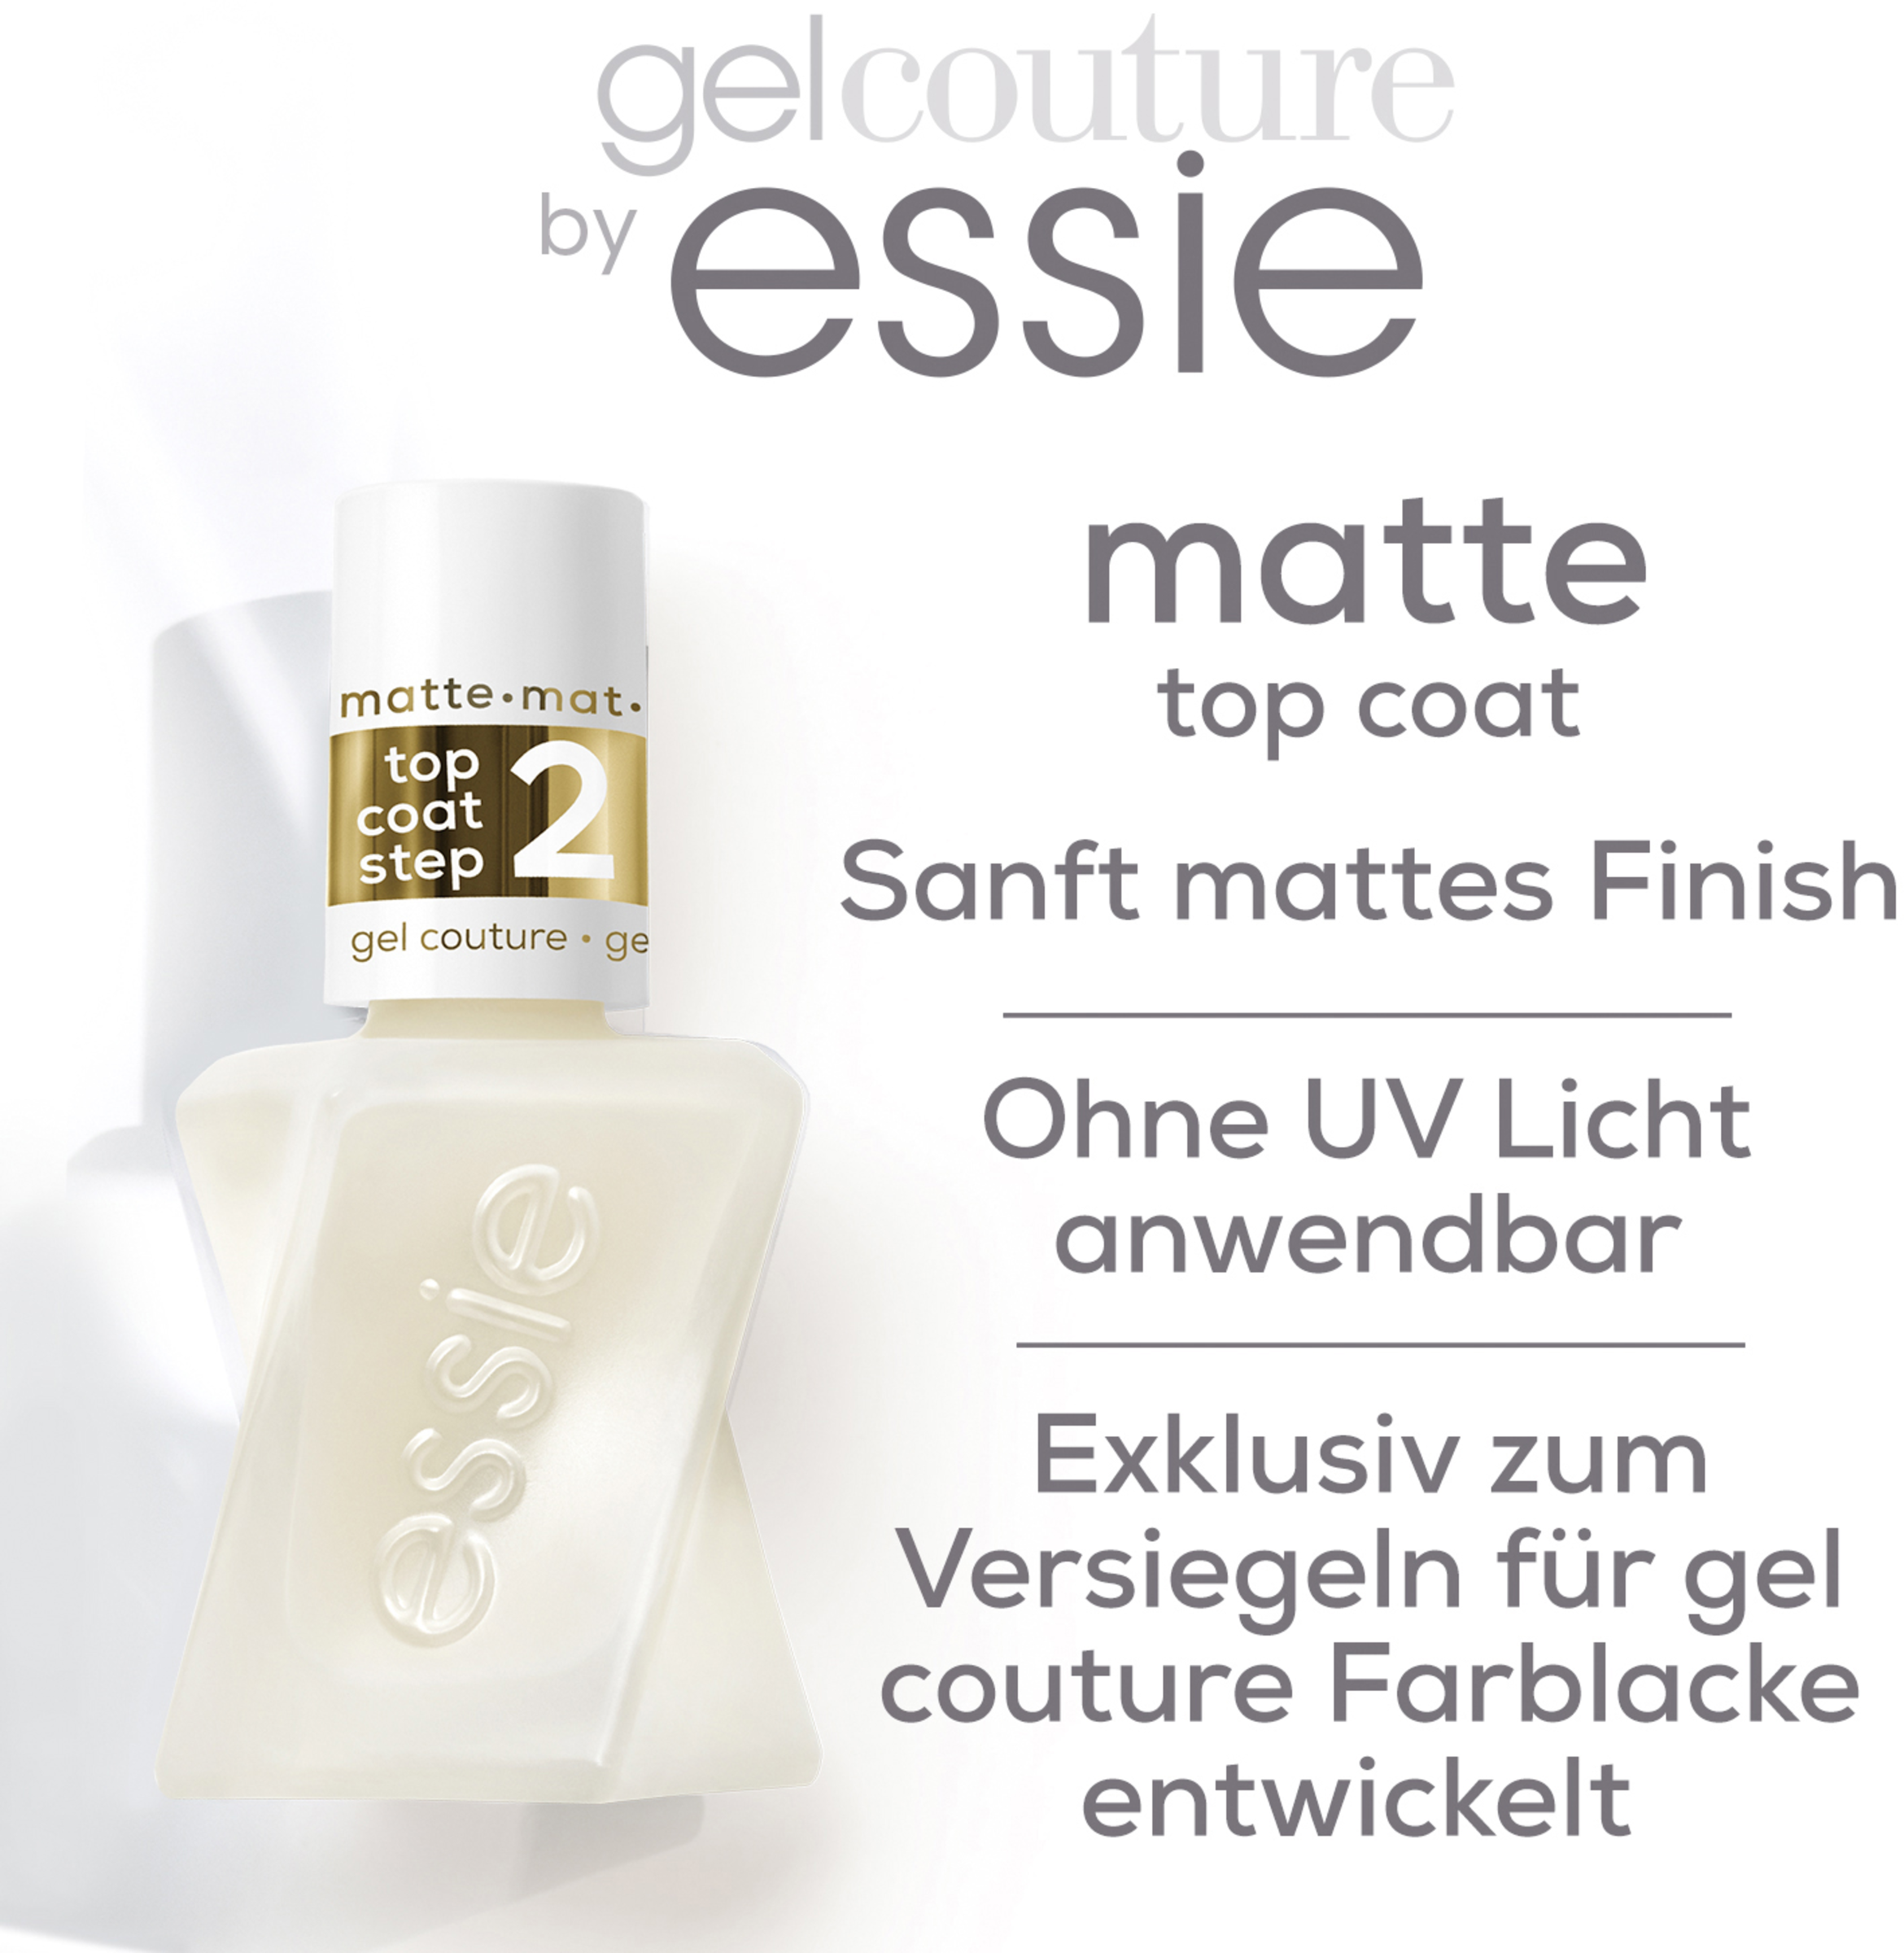 essie Nagellack gel couture matte top coat online kaufen